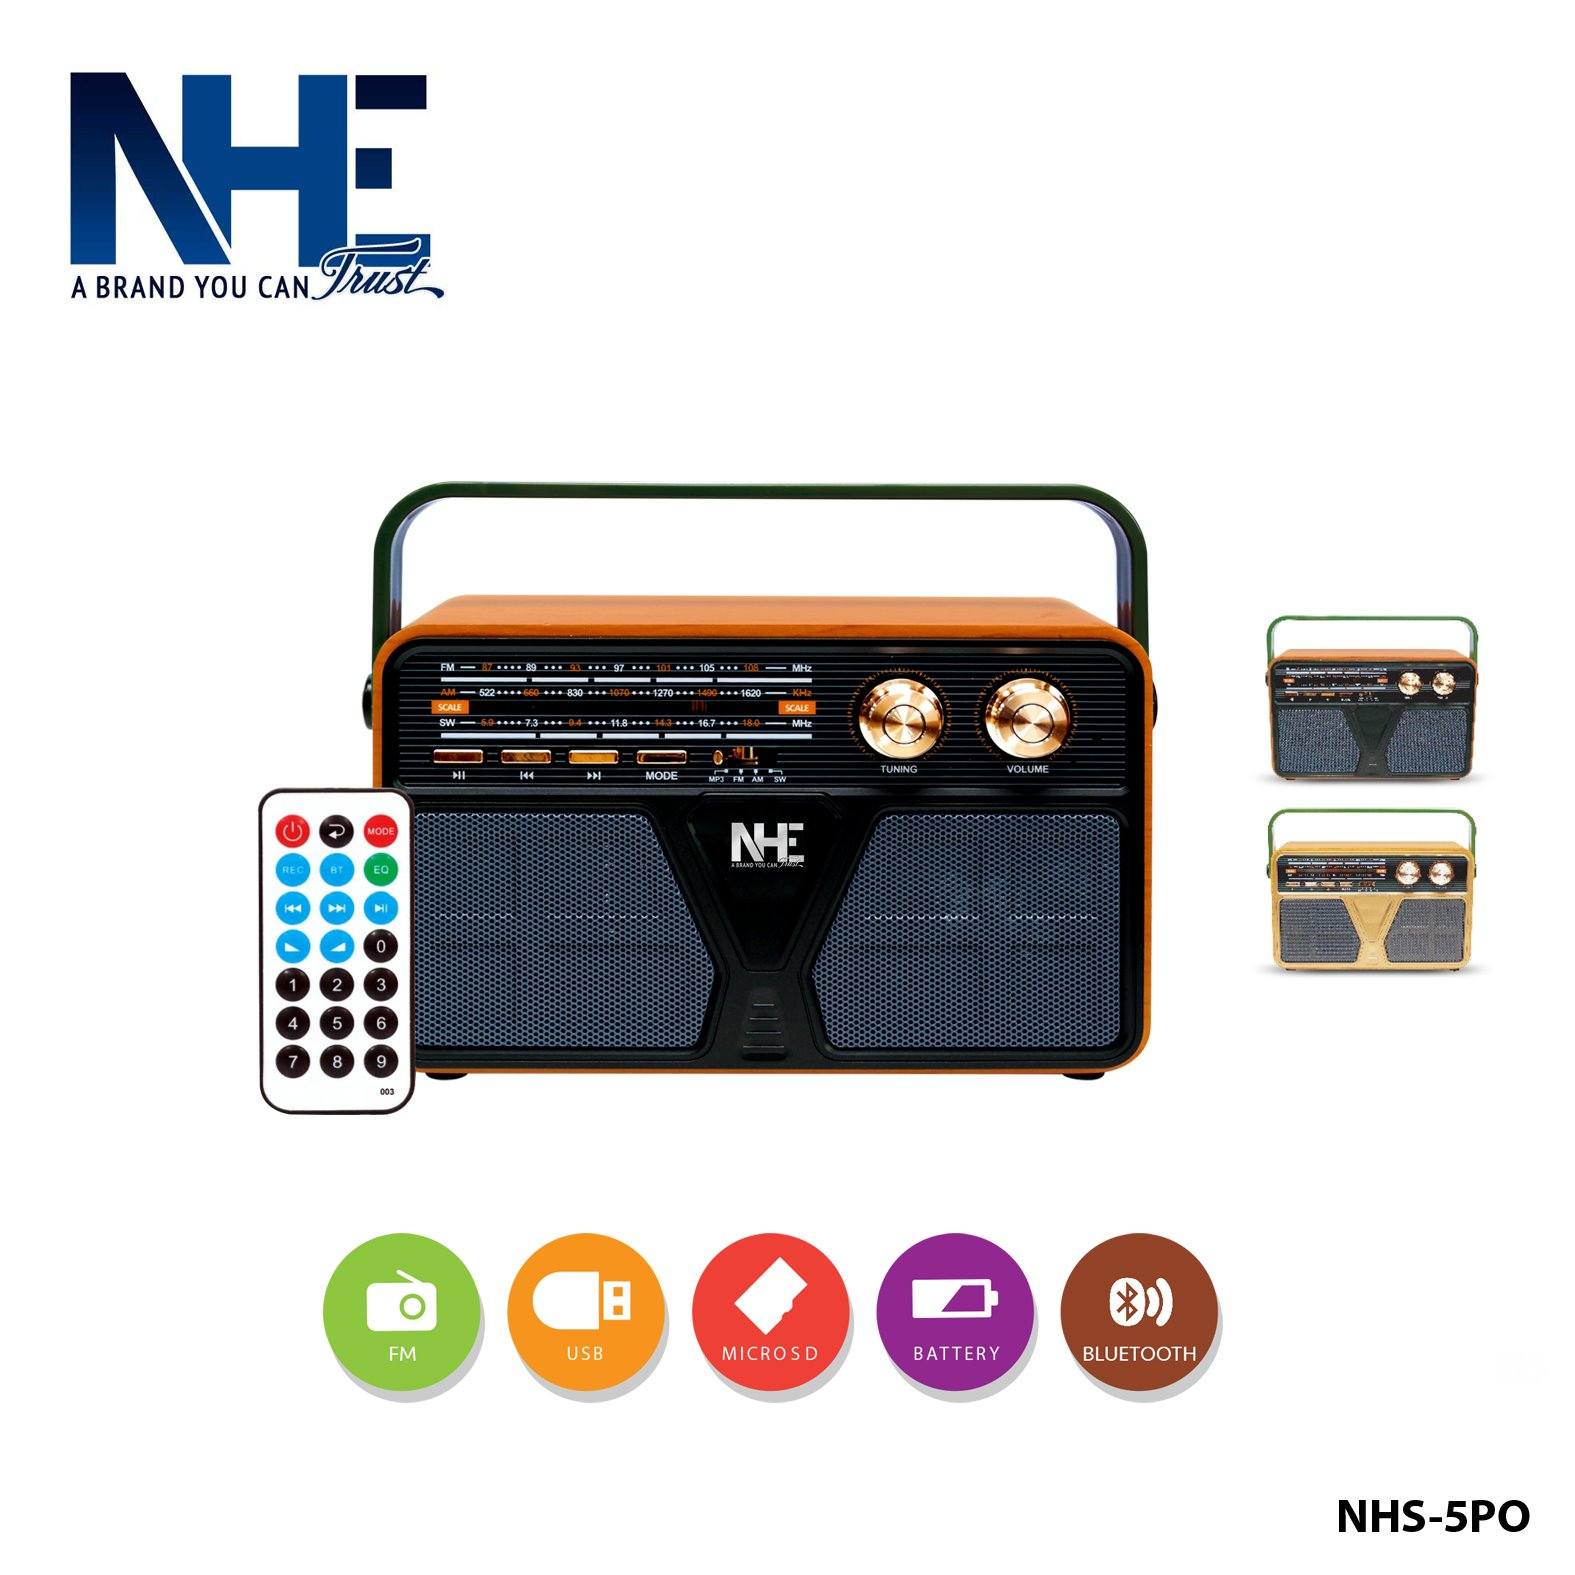 NHE Speaker NHS-5PO19